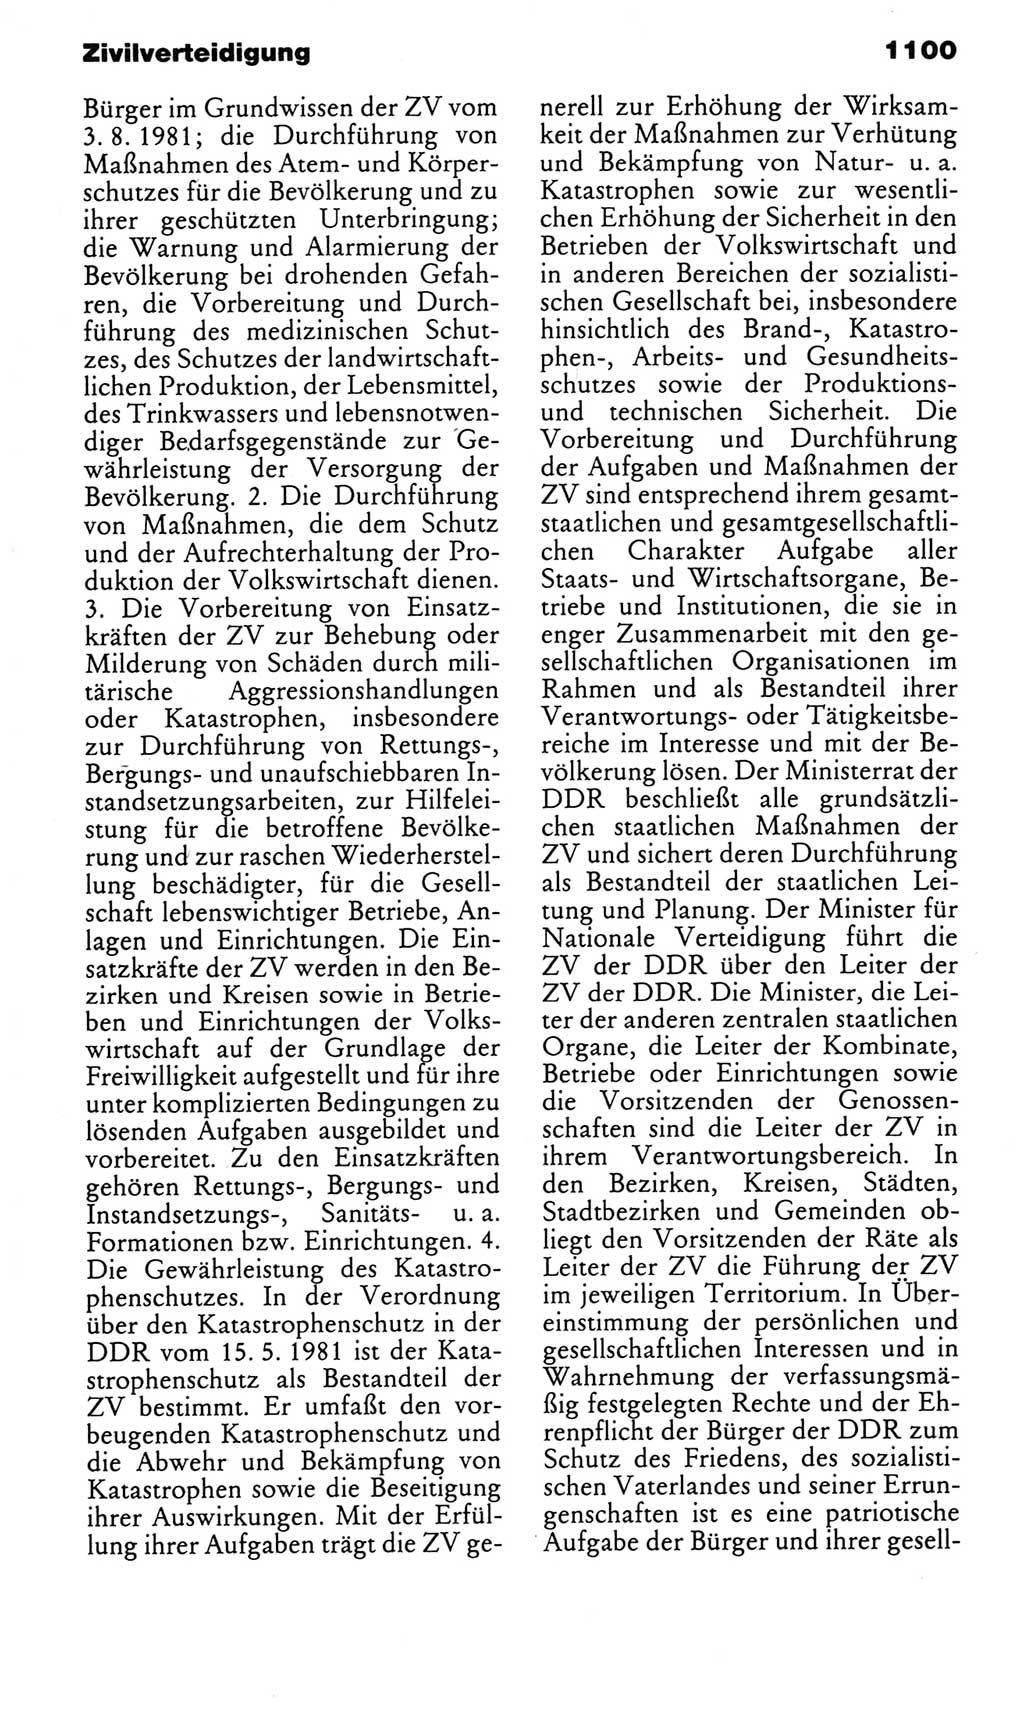 Kleines politisches Wörterbuch [Deutsche Demokratische Republik (DDR)] 1983, Seite 1100 (Kl. pol. Wb. DDR 1983, S. 1100)